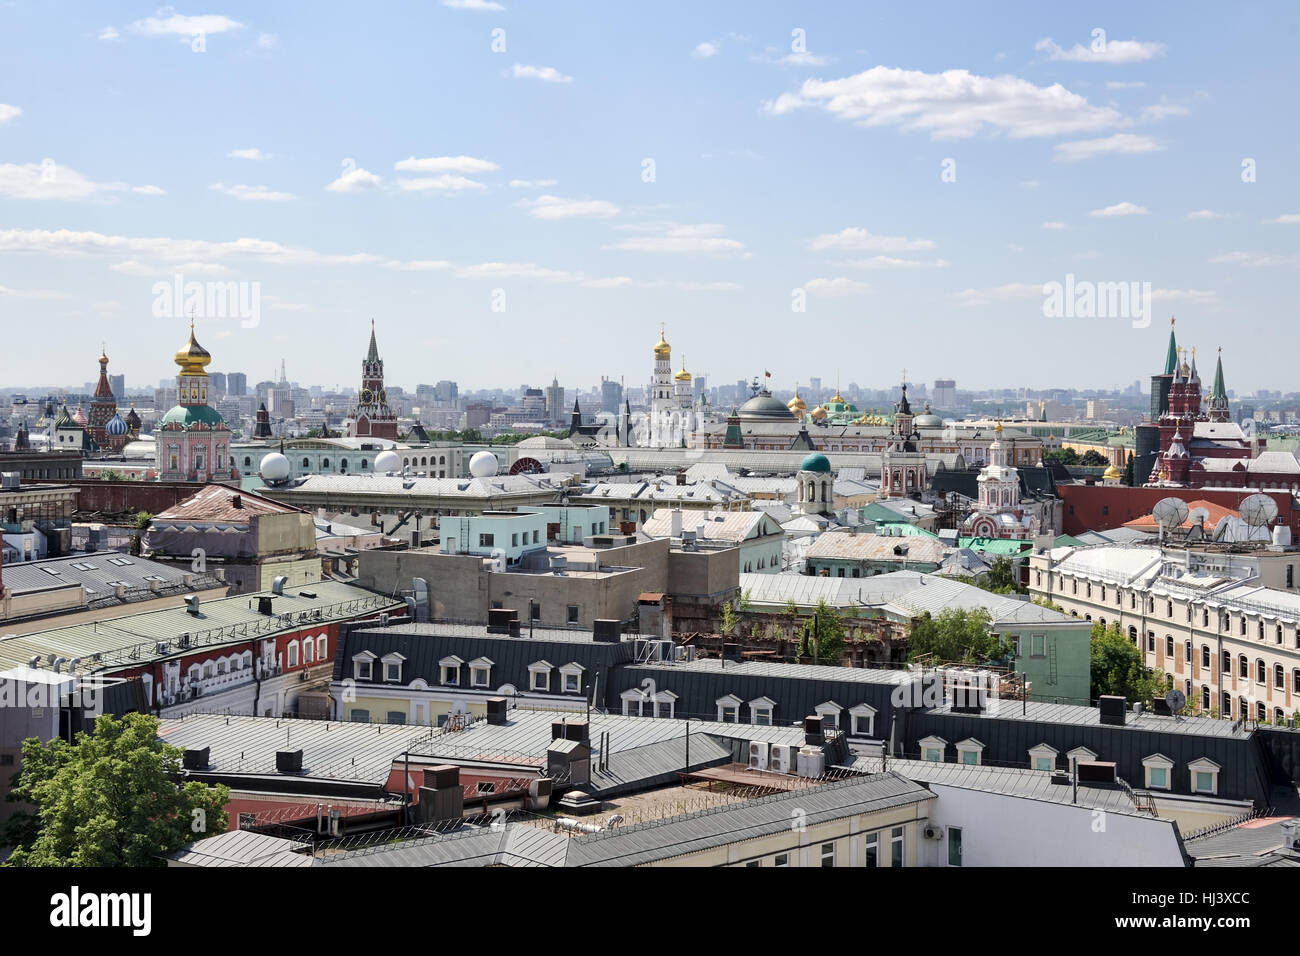 Tours et toits des bâtiments dans le centre historique de la ville de Moscou. Paysages urbains de Moscou, Russie. Banque D'Images